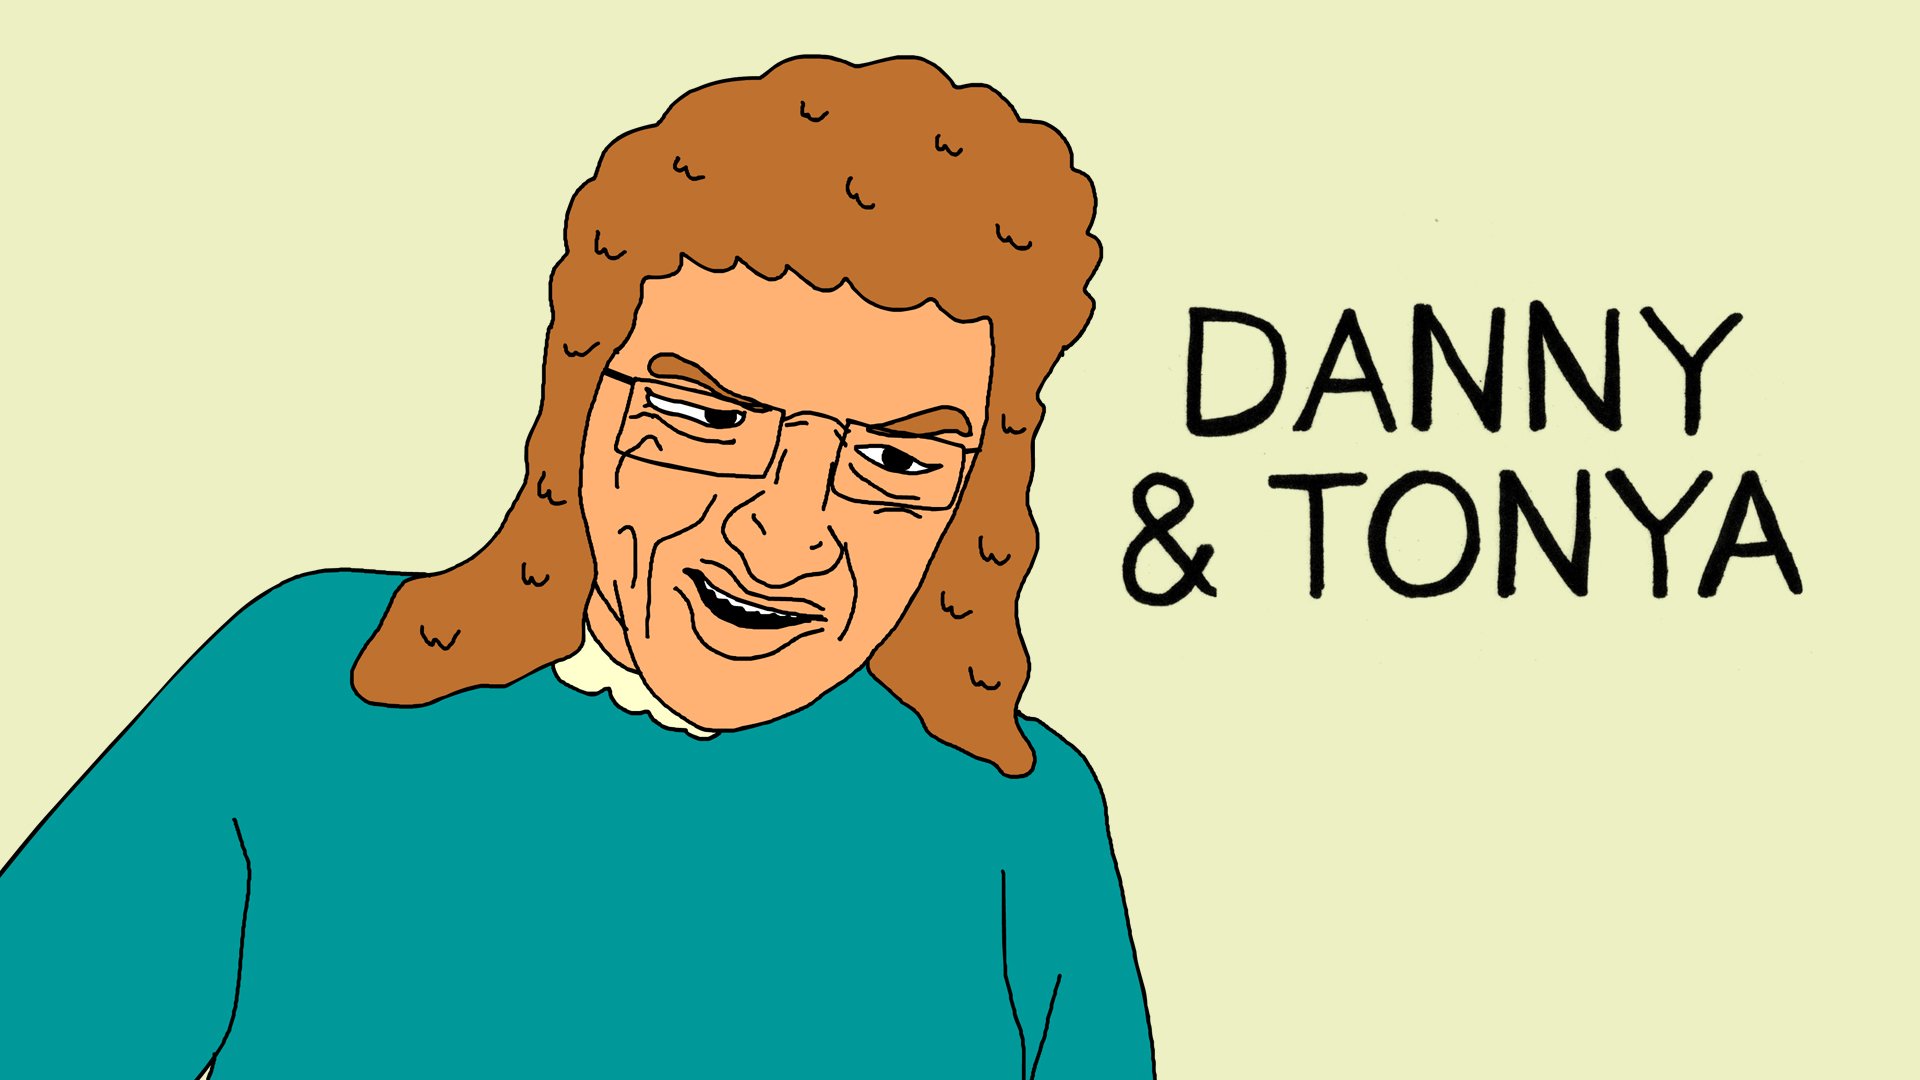 Danni and toni reviews